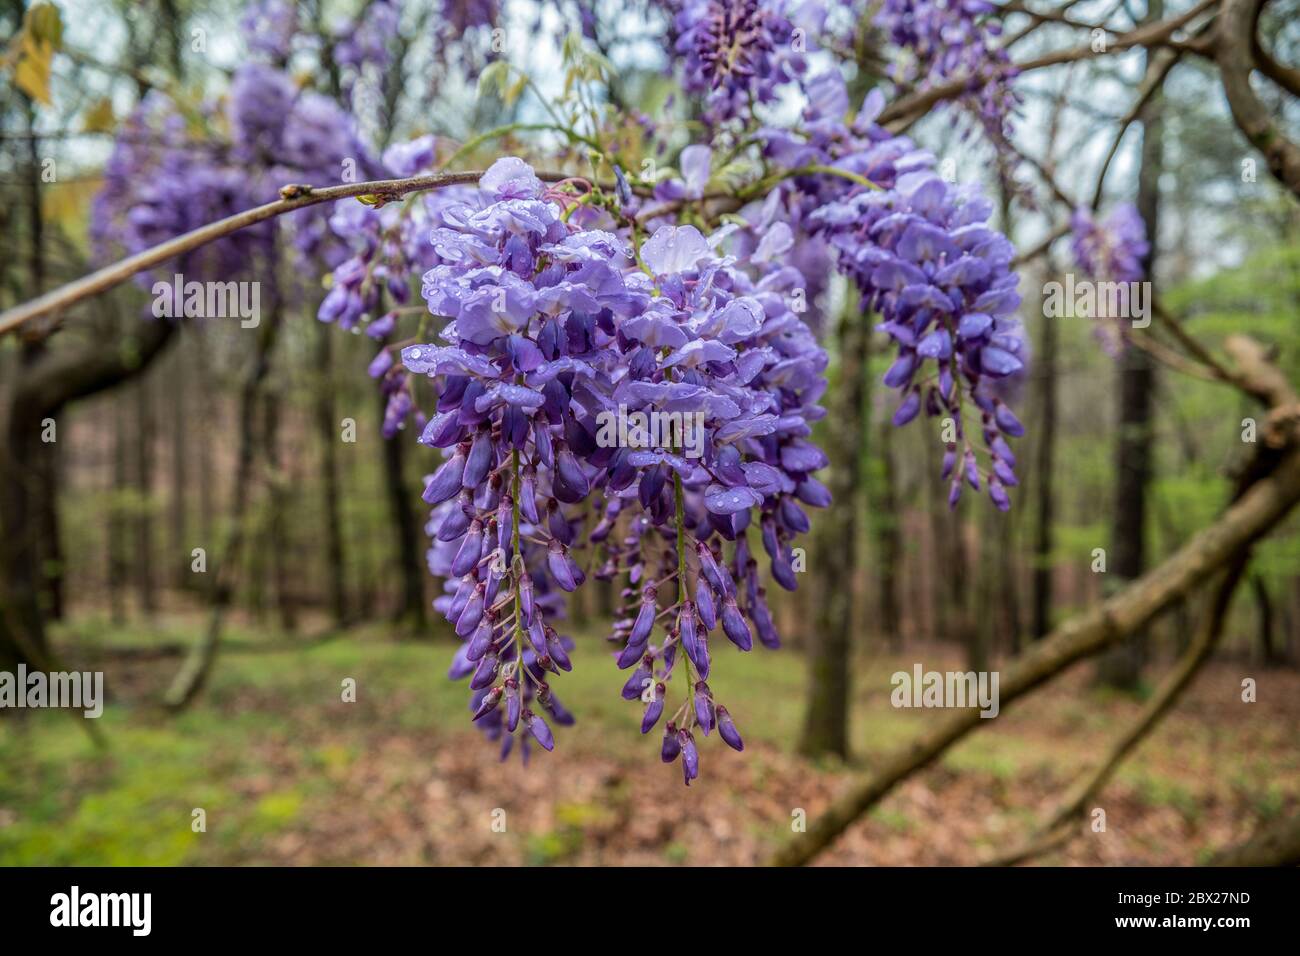 Gruppo di fiori wisteria viola vibrante appesi alla vite di recente apertura fiorisce con gocce d'acqua sui petali dopo la pioggia in primavera precoce Foto Stock